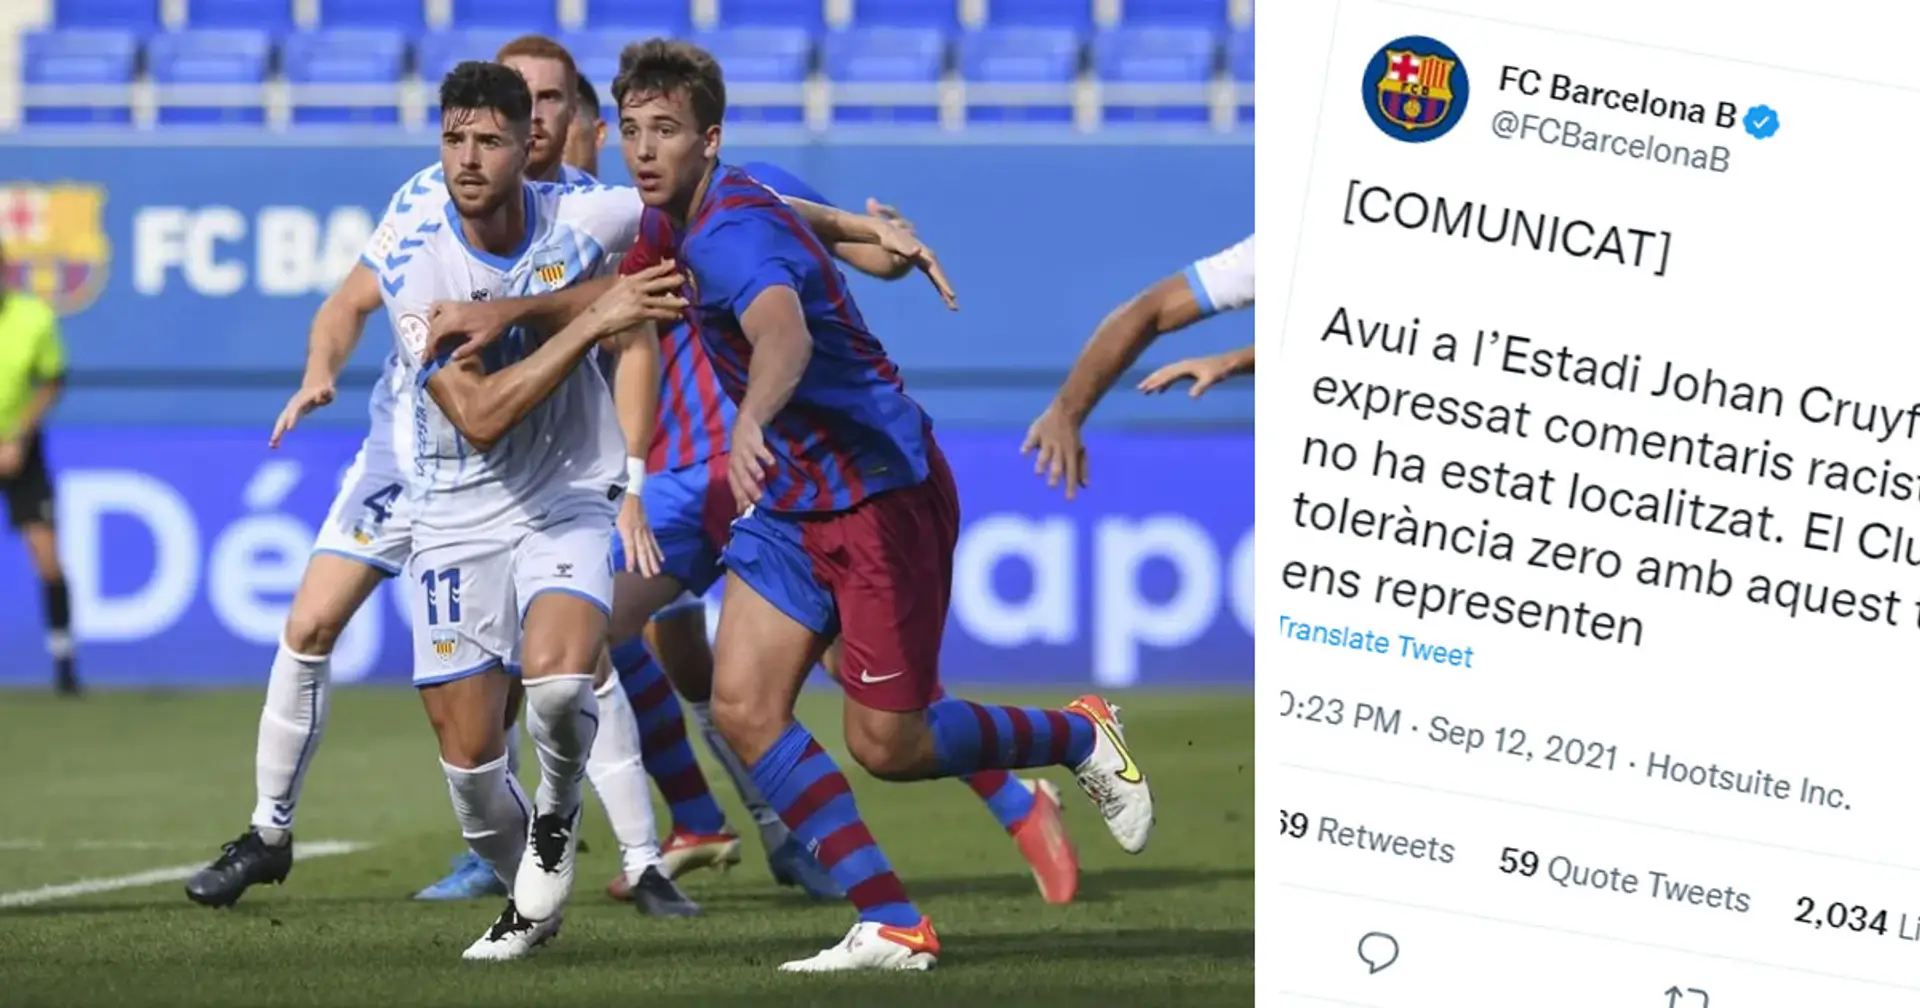 Le Barca publie une déclaration officielle condamnant le racisme après qu'un joueur adverse a été maltraité lors du match du Barça B par un fan à domicile